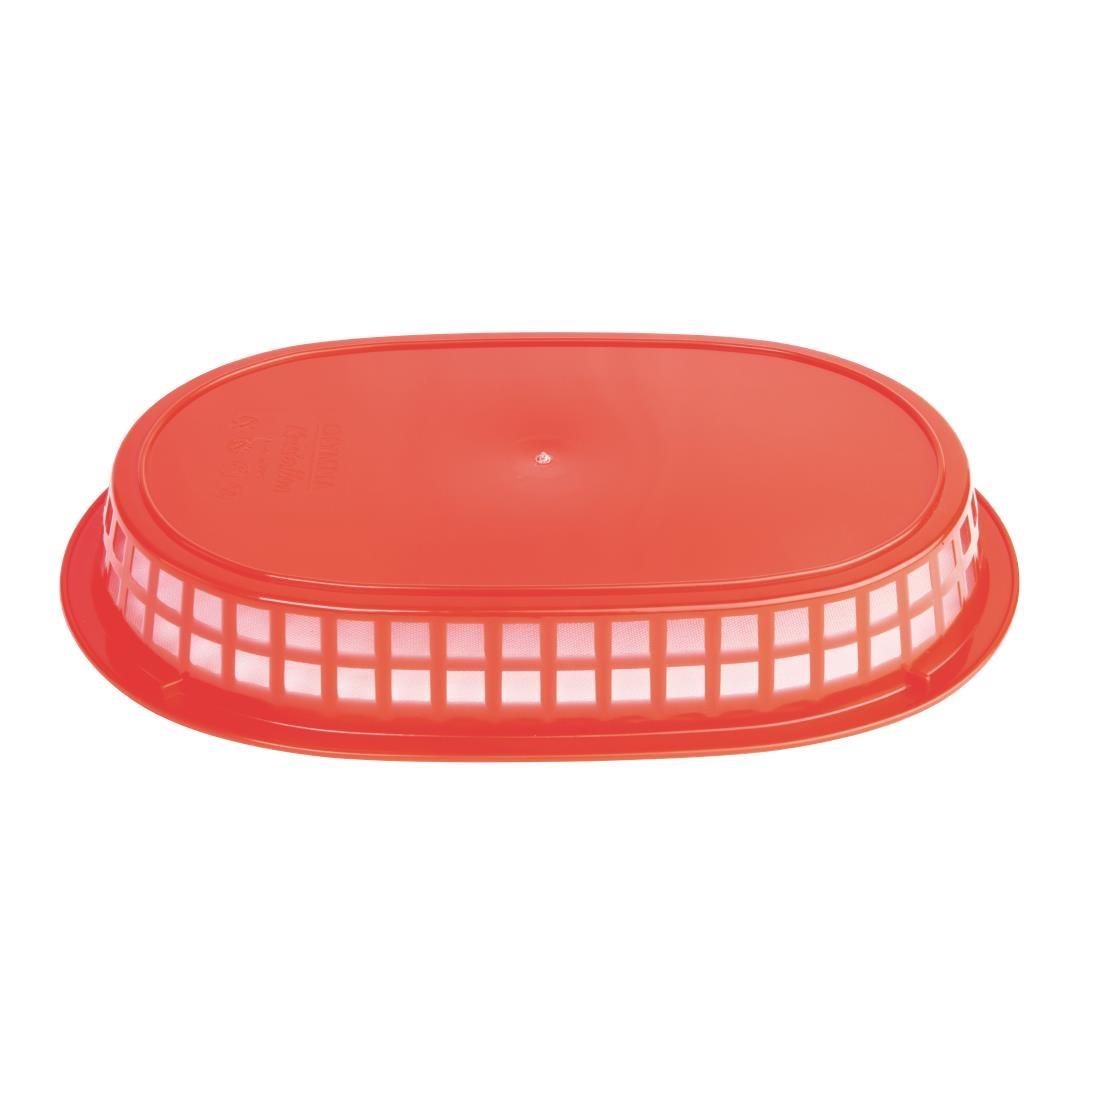 Oval Polypropylene Food Basket Red (Pack of 6) - GH967  - 3